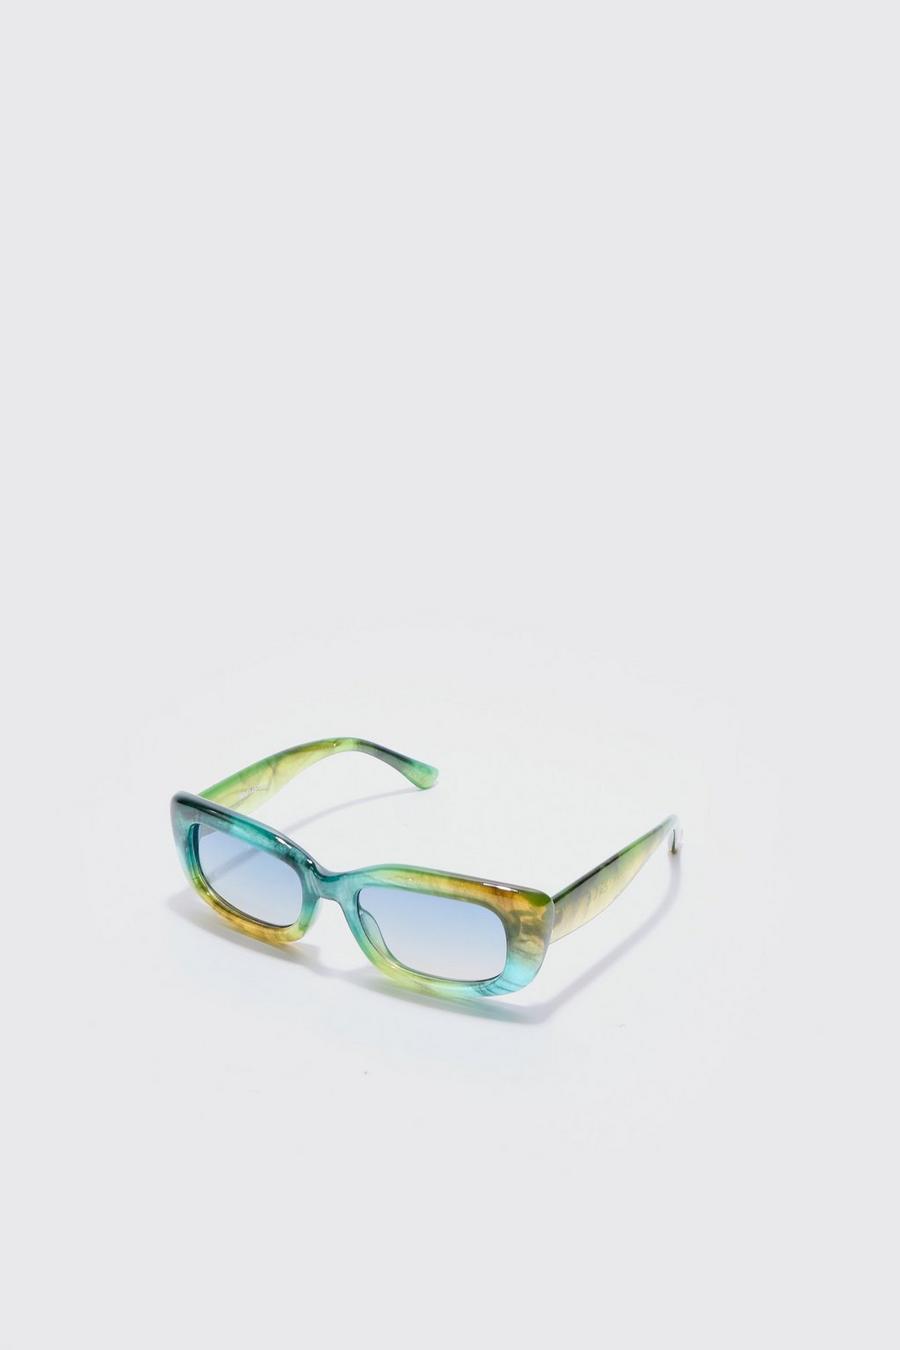 Green Rektangulära solglasögon i grönt plastmaterial